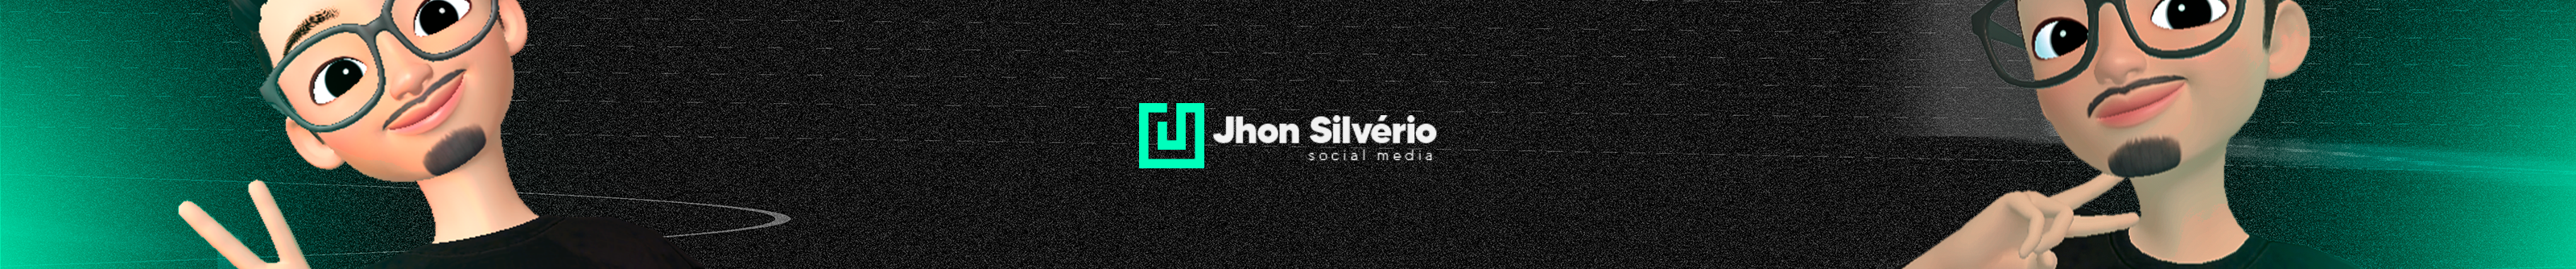 Banner de perfil de Jhon Silvério